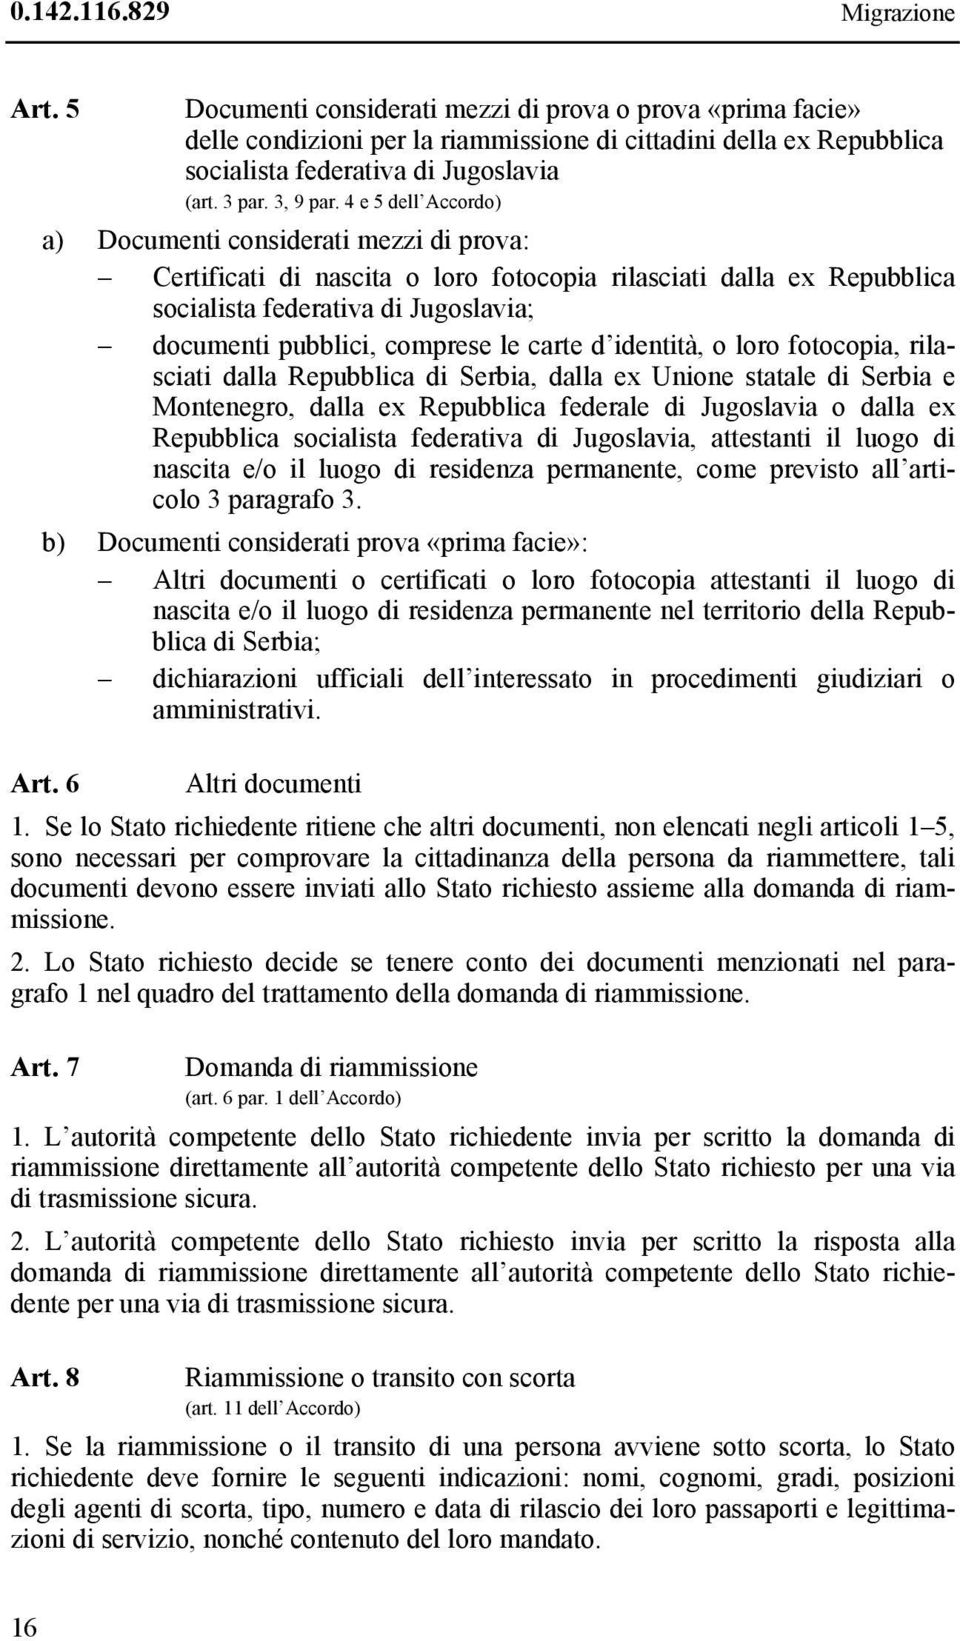 4 e 5 dell Accordo) a) Documenti considerati mezzi di prova: Certificati di nascita o loro fotocopia rilasciati dalla ex Repubblica socialista federativa di Jugoslavia; documenti pubblici, comprese